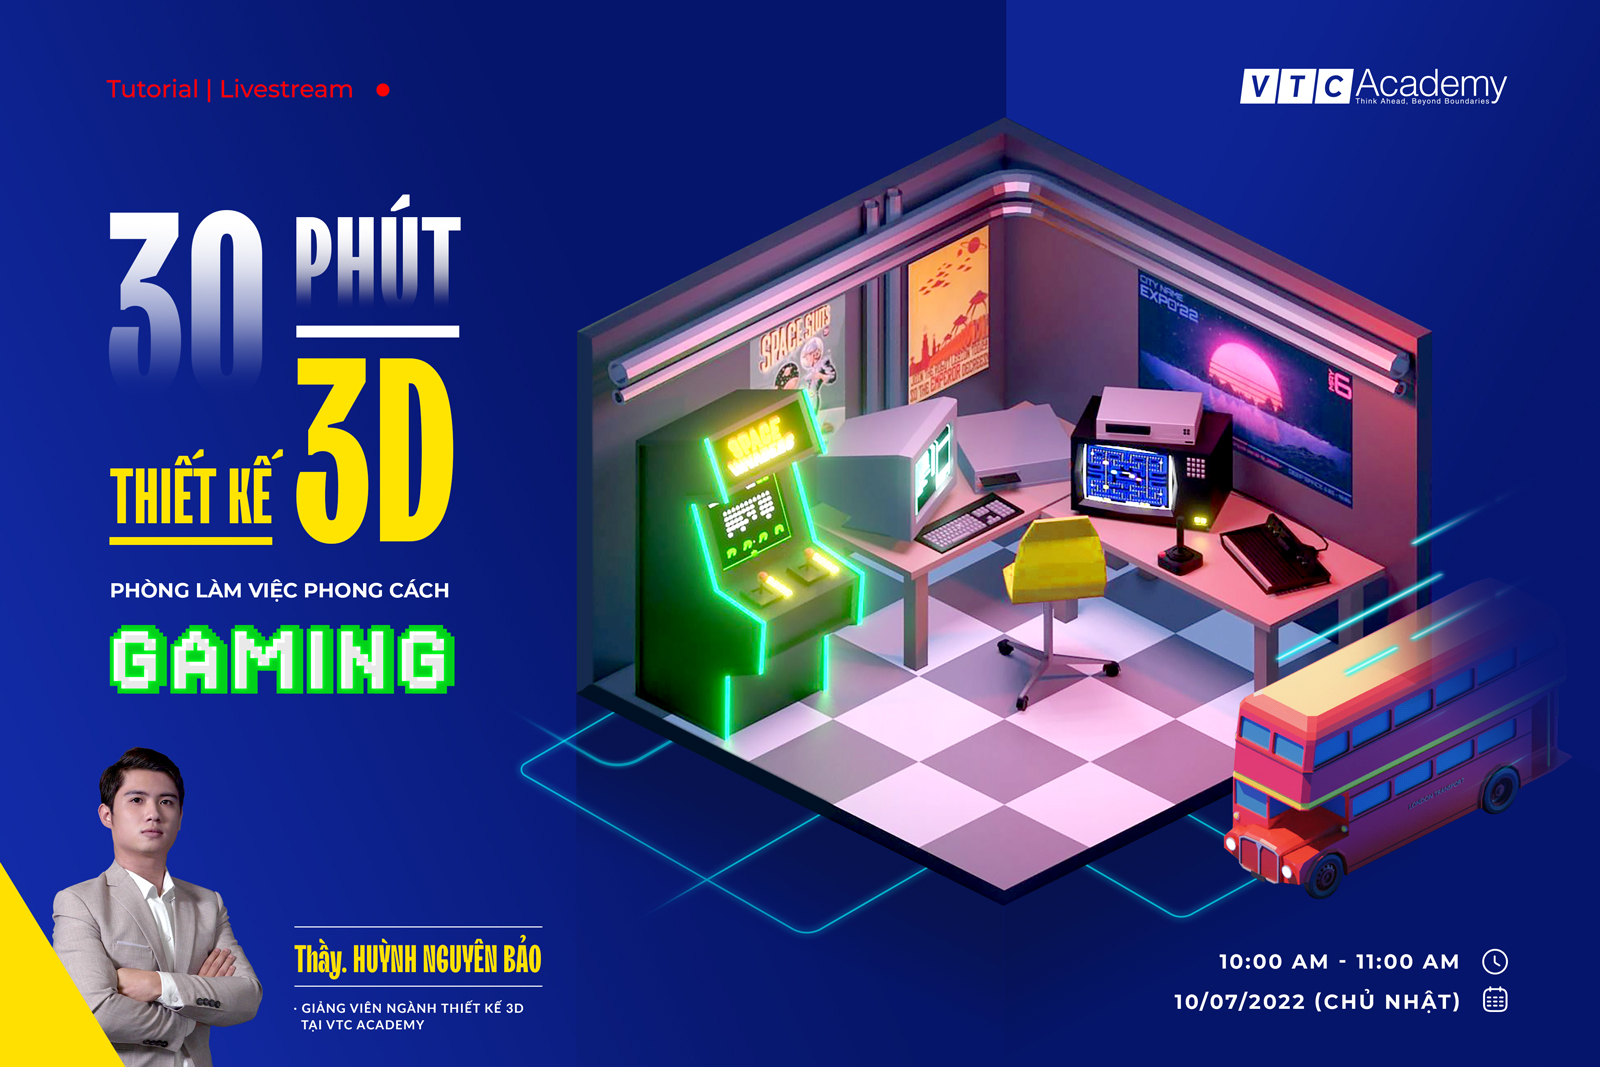 [TUTORIAL] Dựng hình 3D | 30 phút thiết kế 3D phòng làm việc theo phong cách Gaming